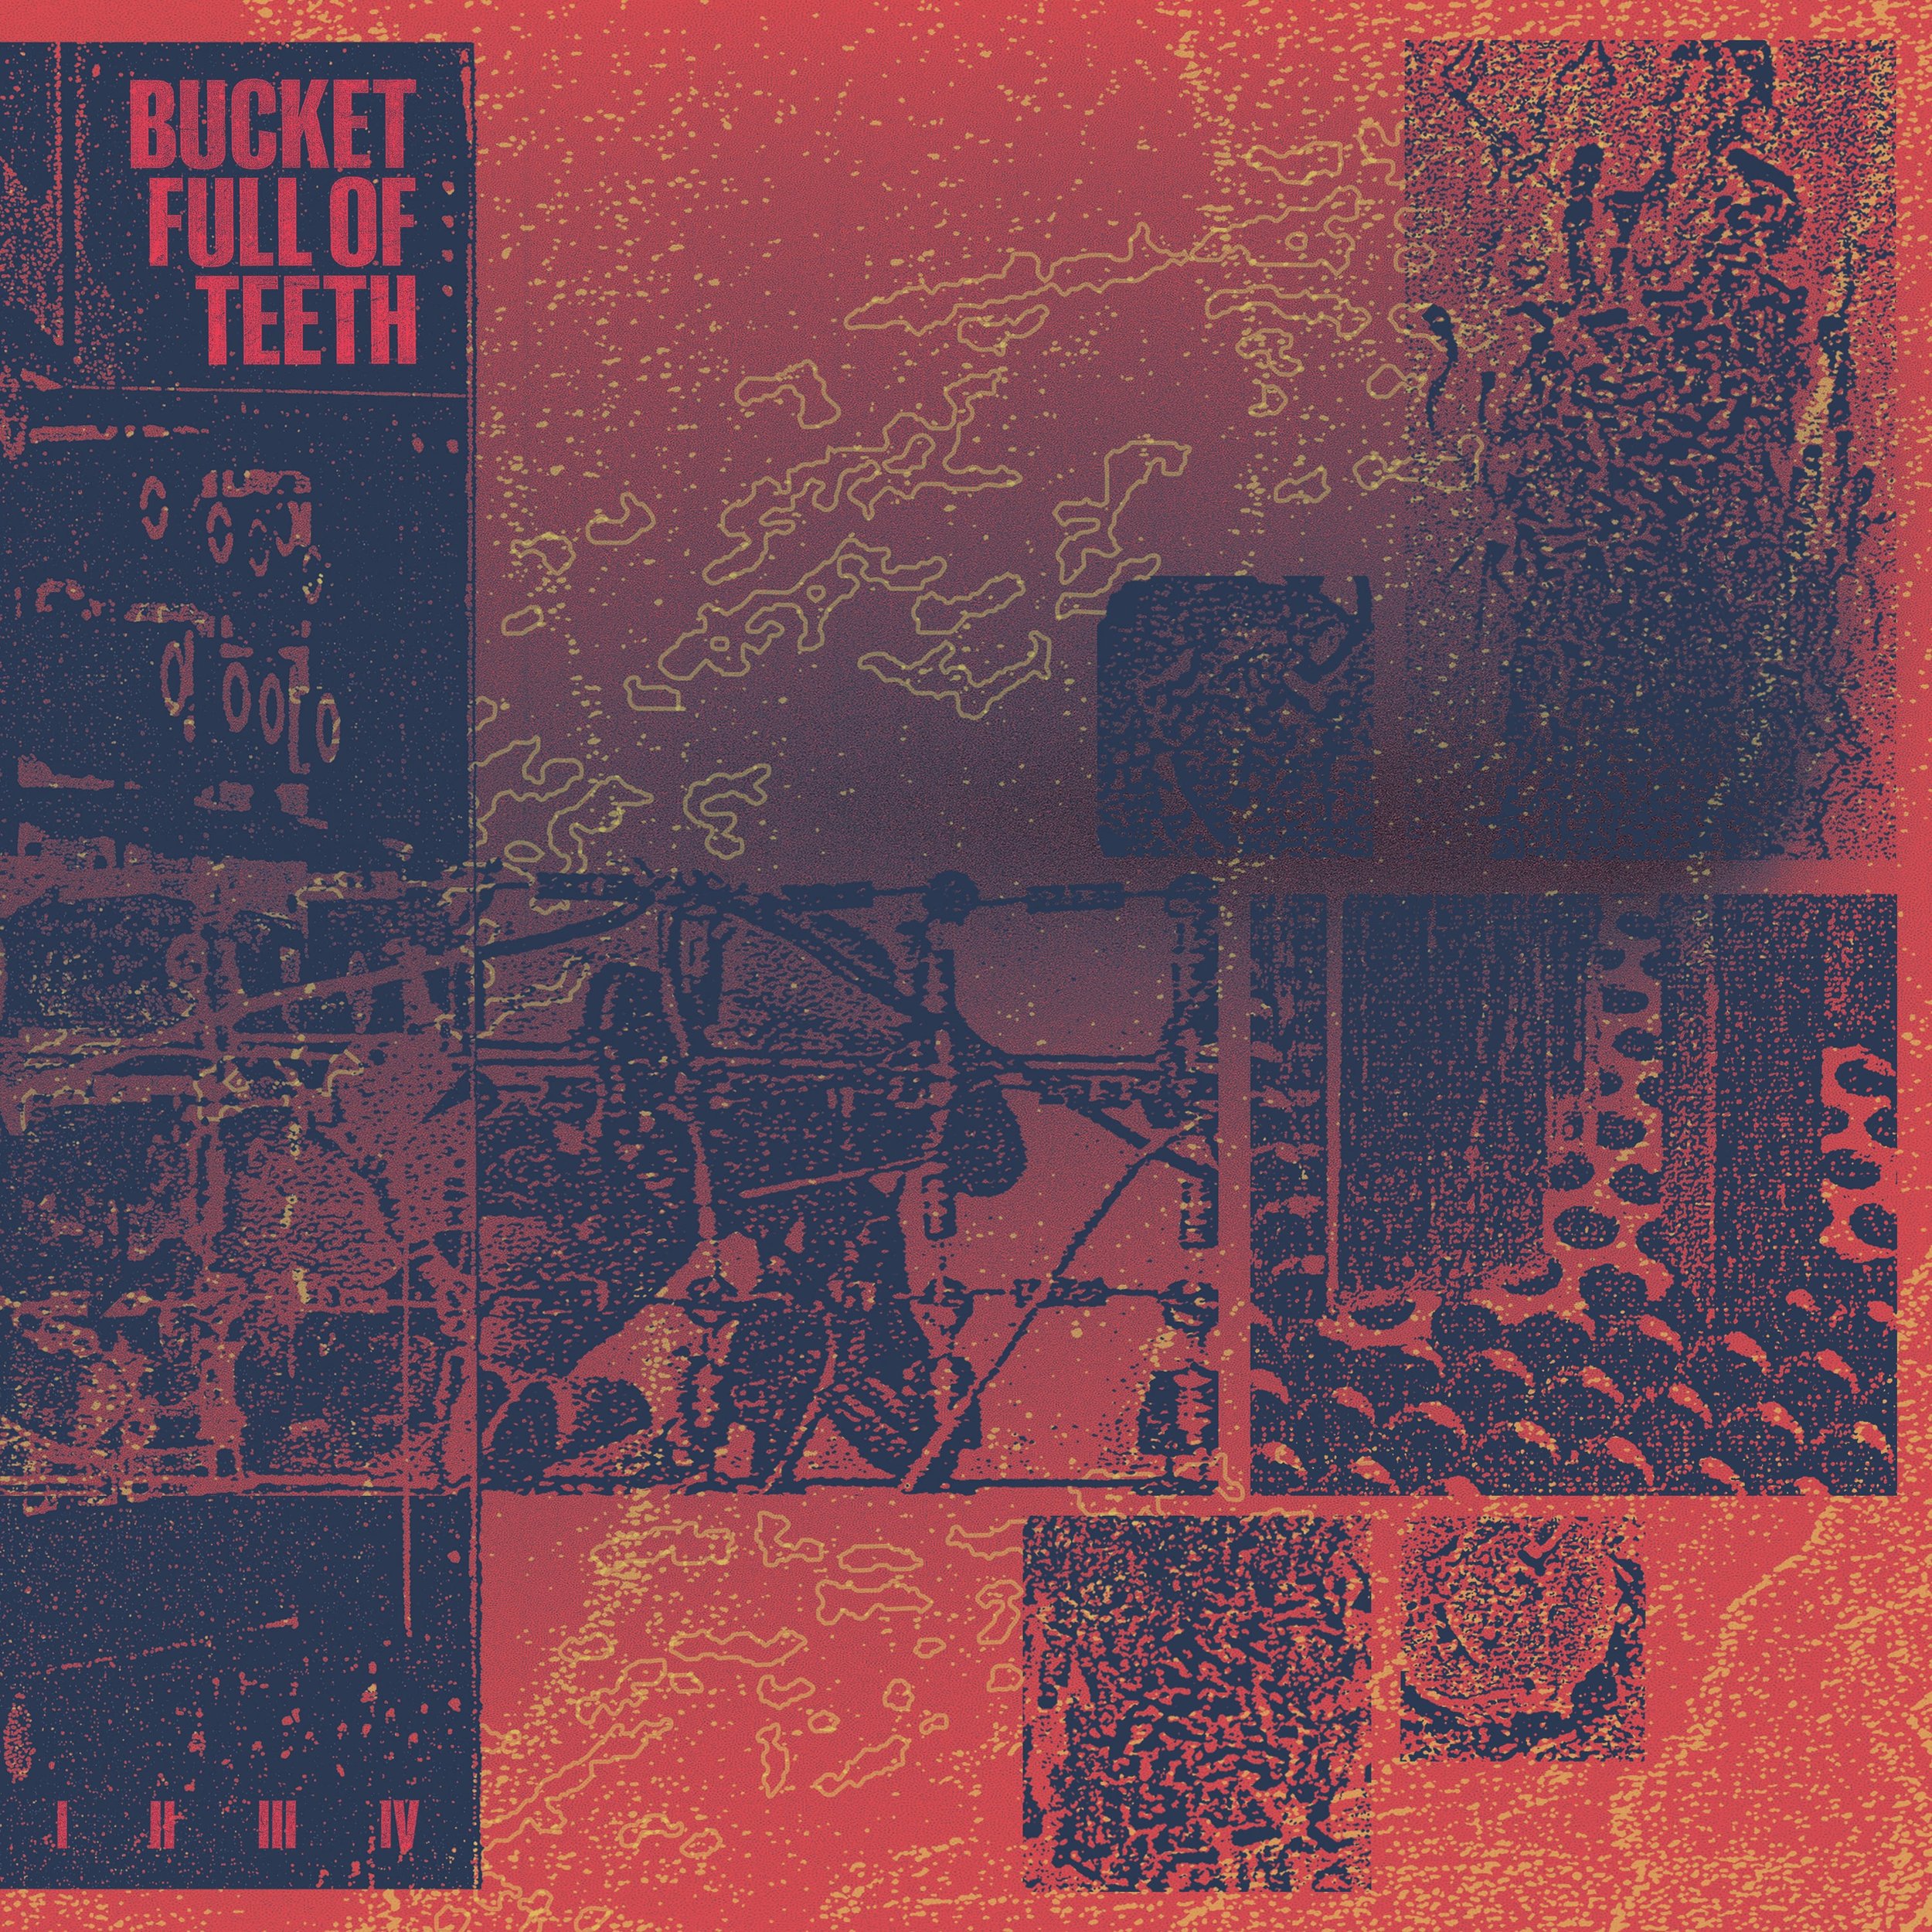 Bucket Full Of Teeth - I II III IV - Cover.jpg